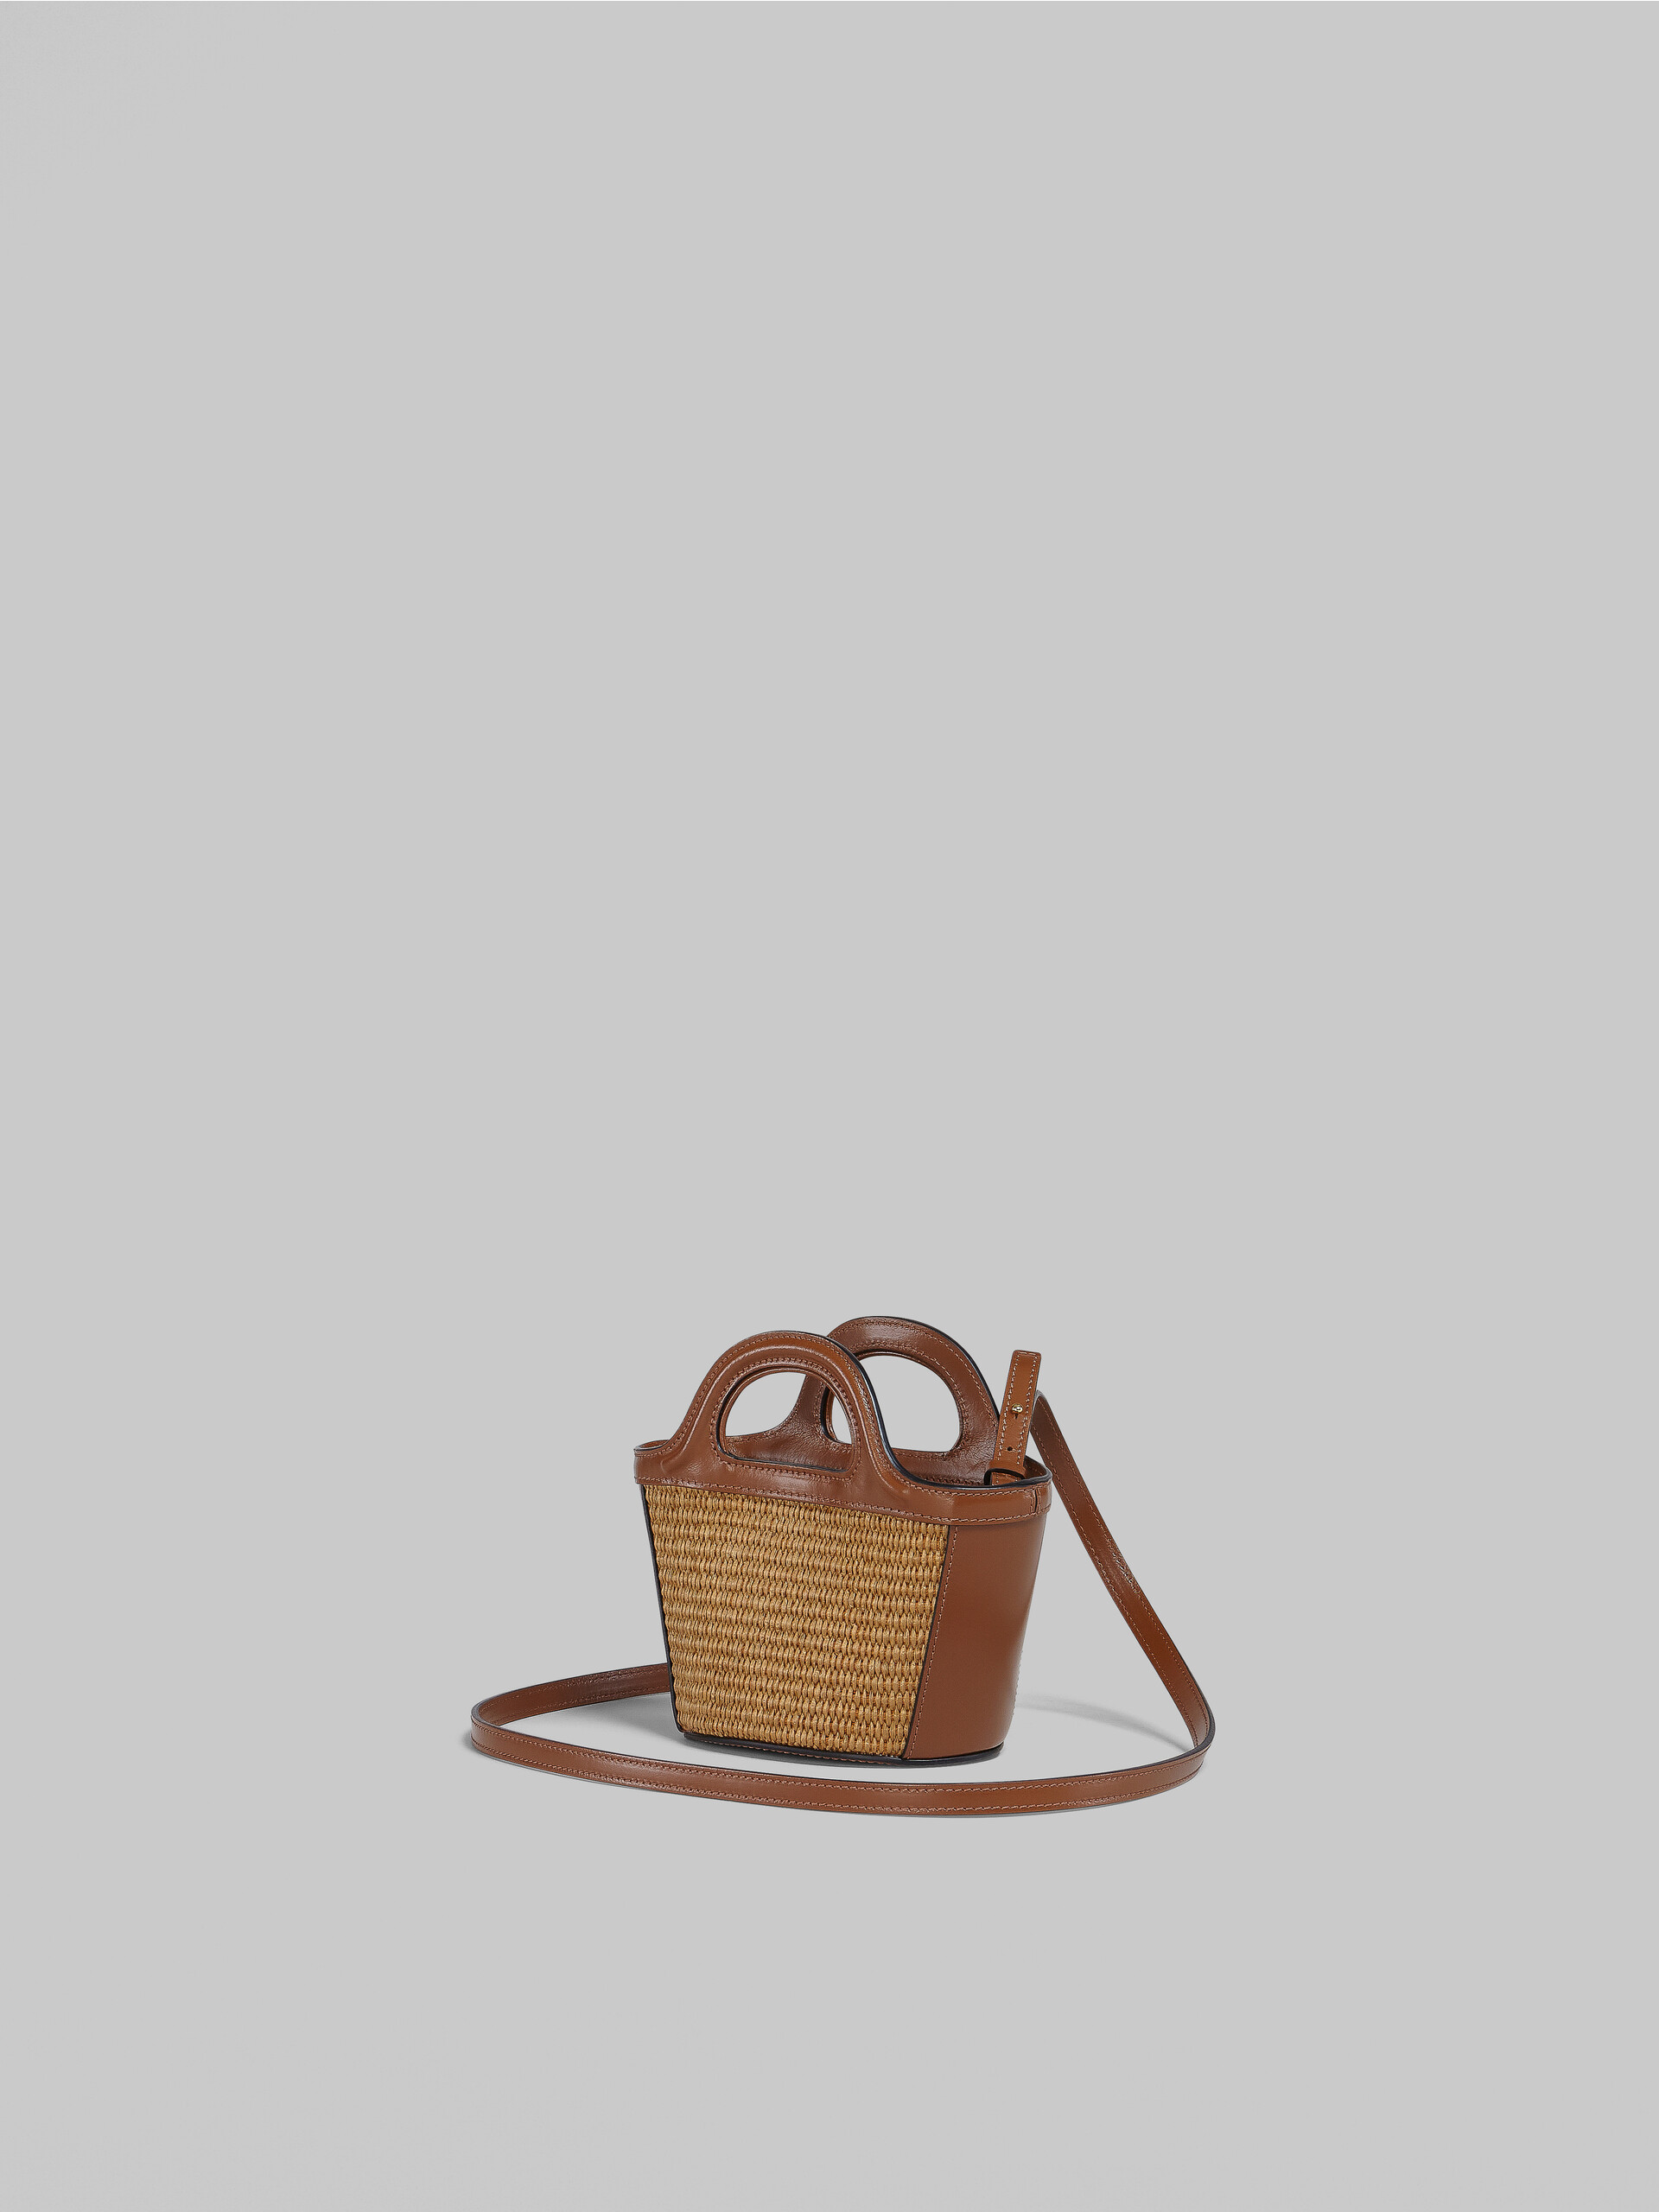 Brown leather micro TROPICALIA SUMMER bag - Handbags - Image 3